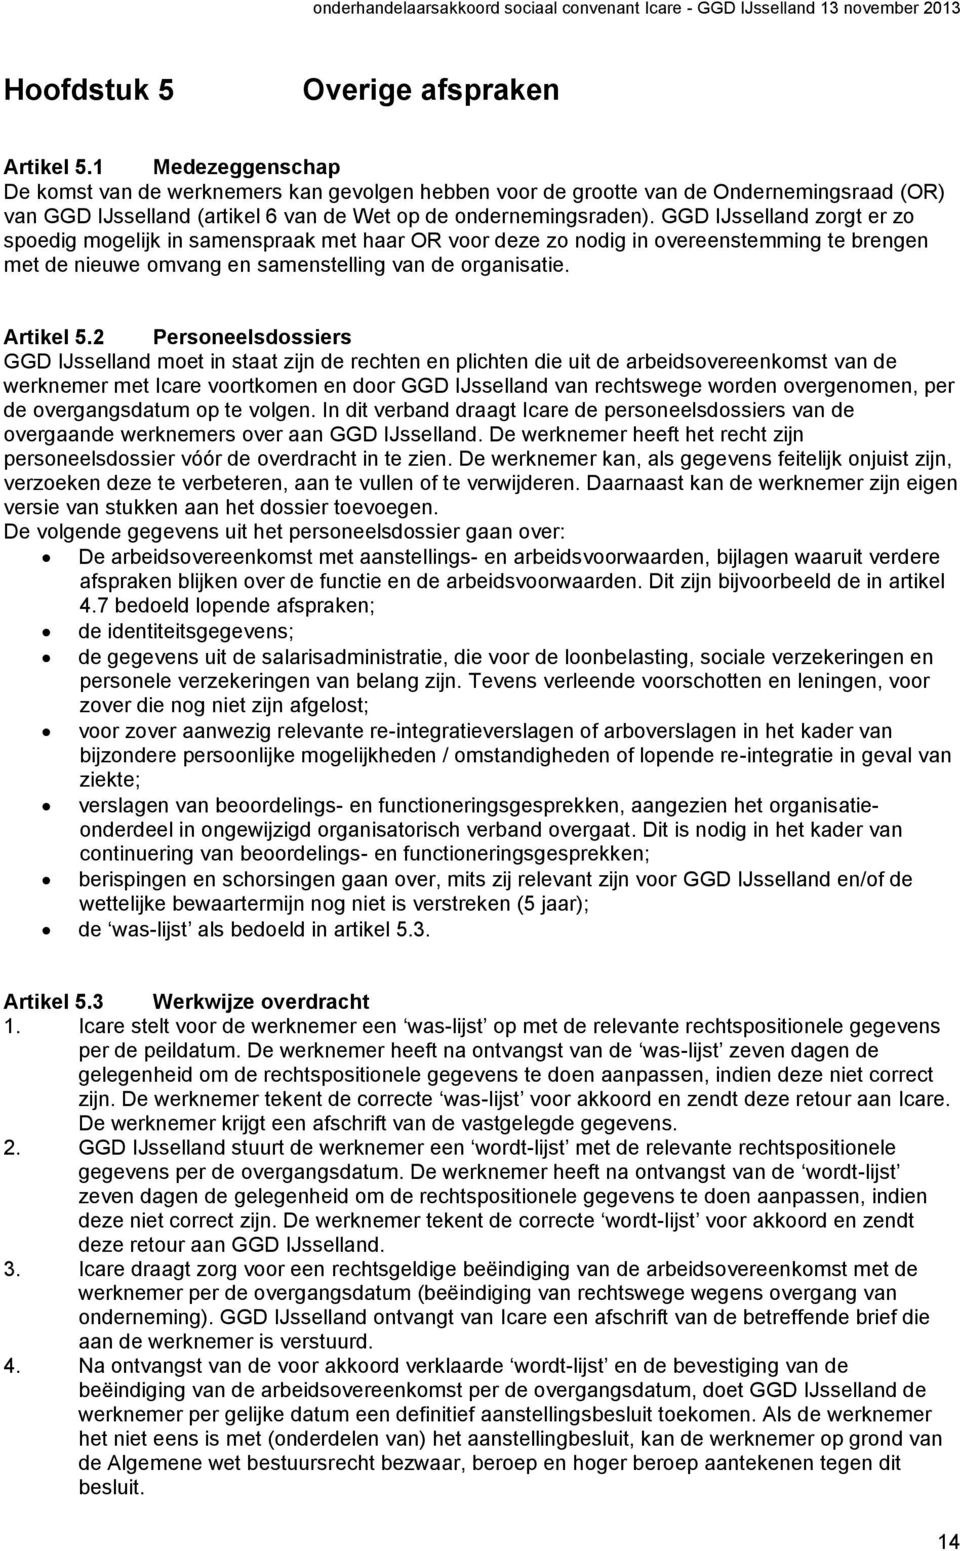 GGD IJsselland zorgt er zo spoedig mogelijk in samenspraak met haar OR voor deze zo nodig in overeenstemming te brengen met de nieuwe omvang en samenstelling van de organisatie. Artikel 5.